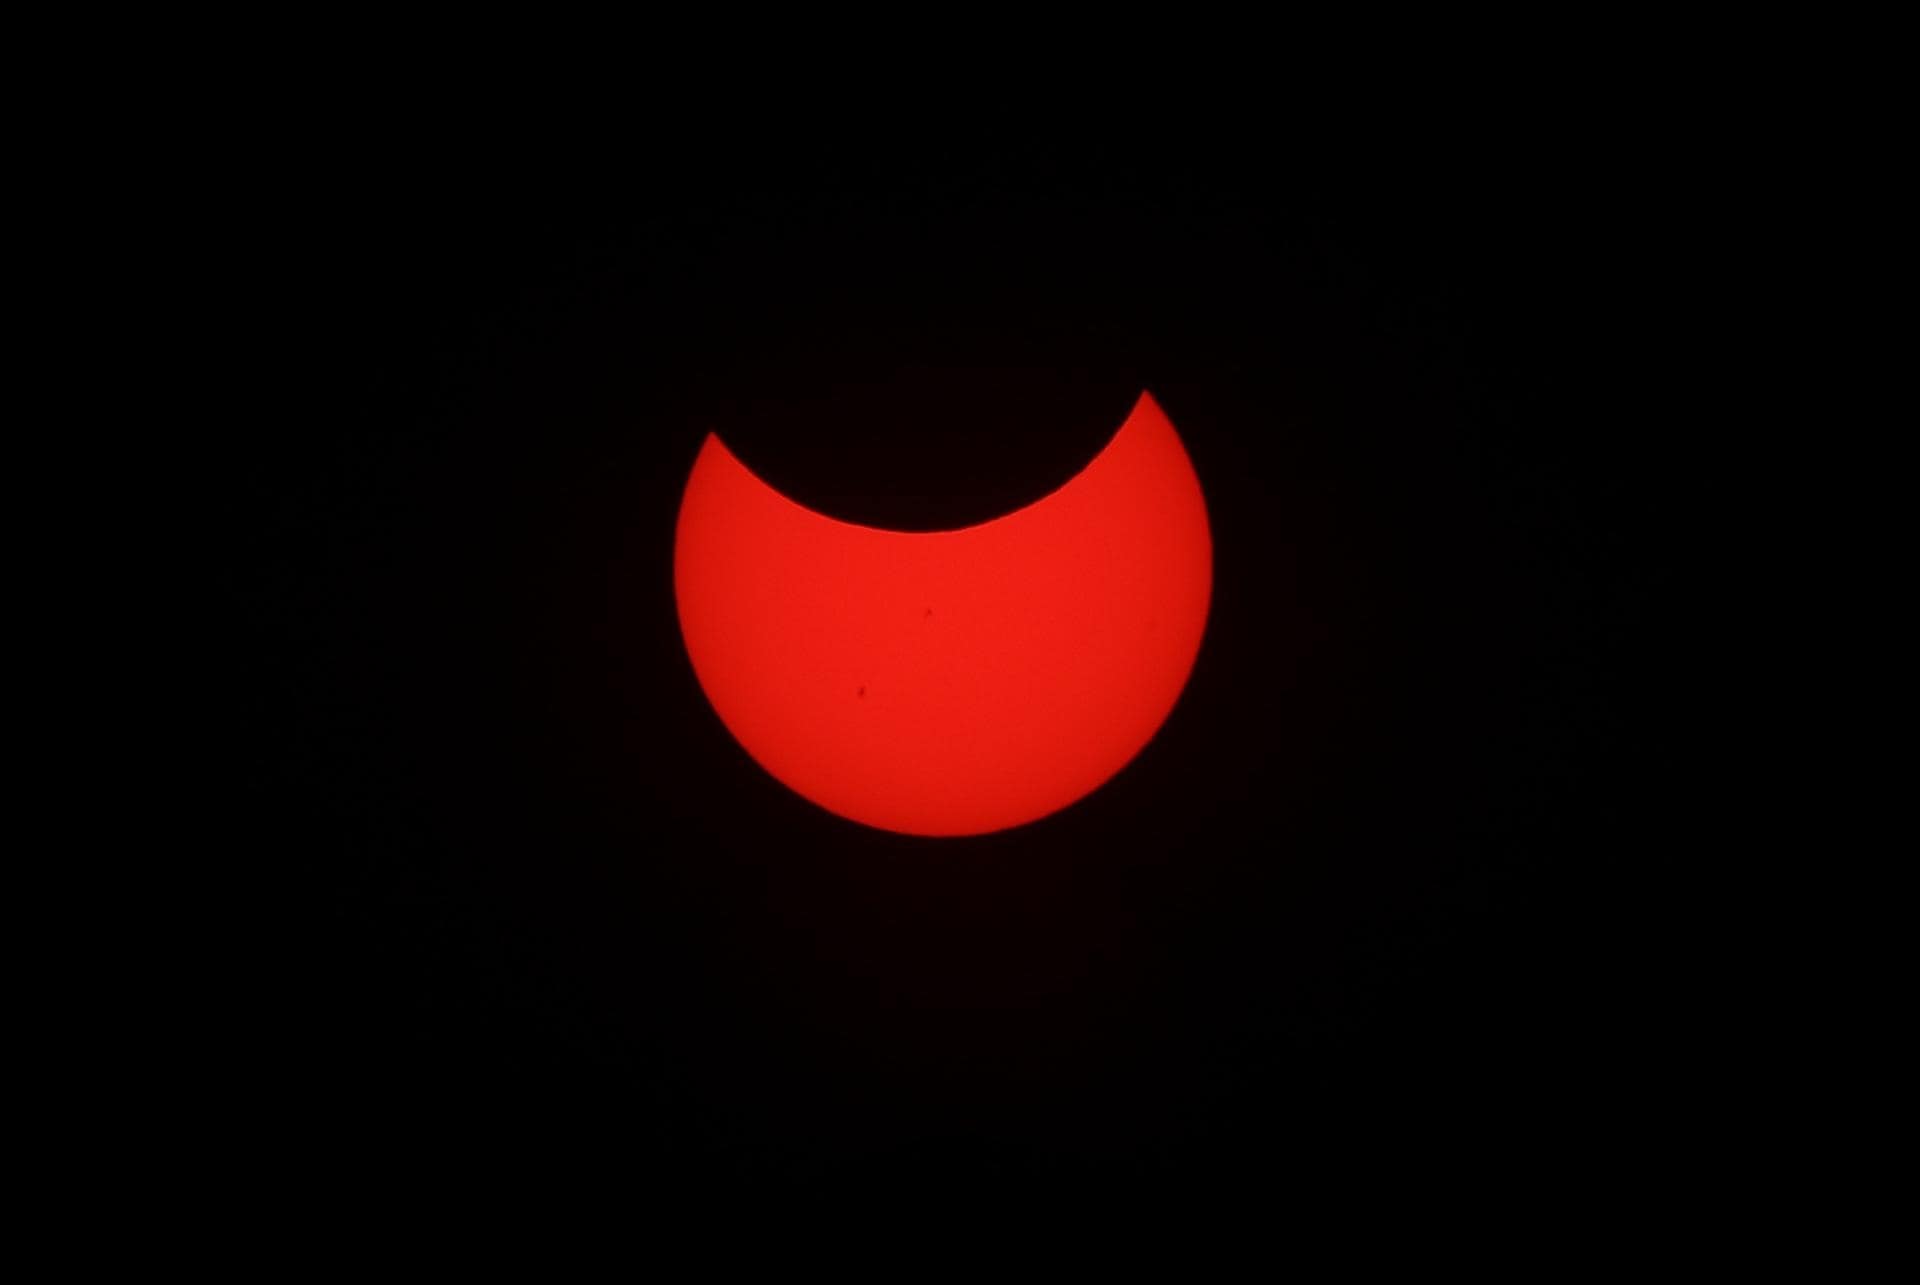 Eclipse solar anular inicia su recorrido por el norte del continente americano